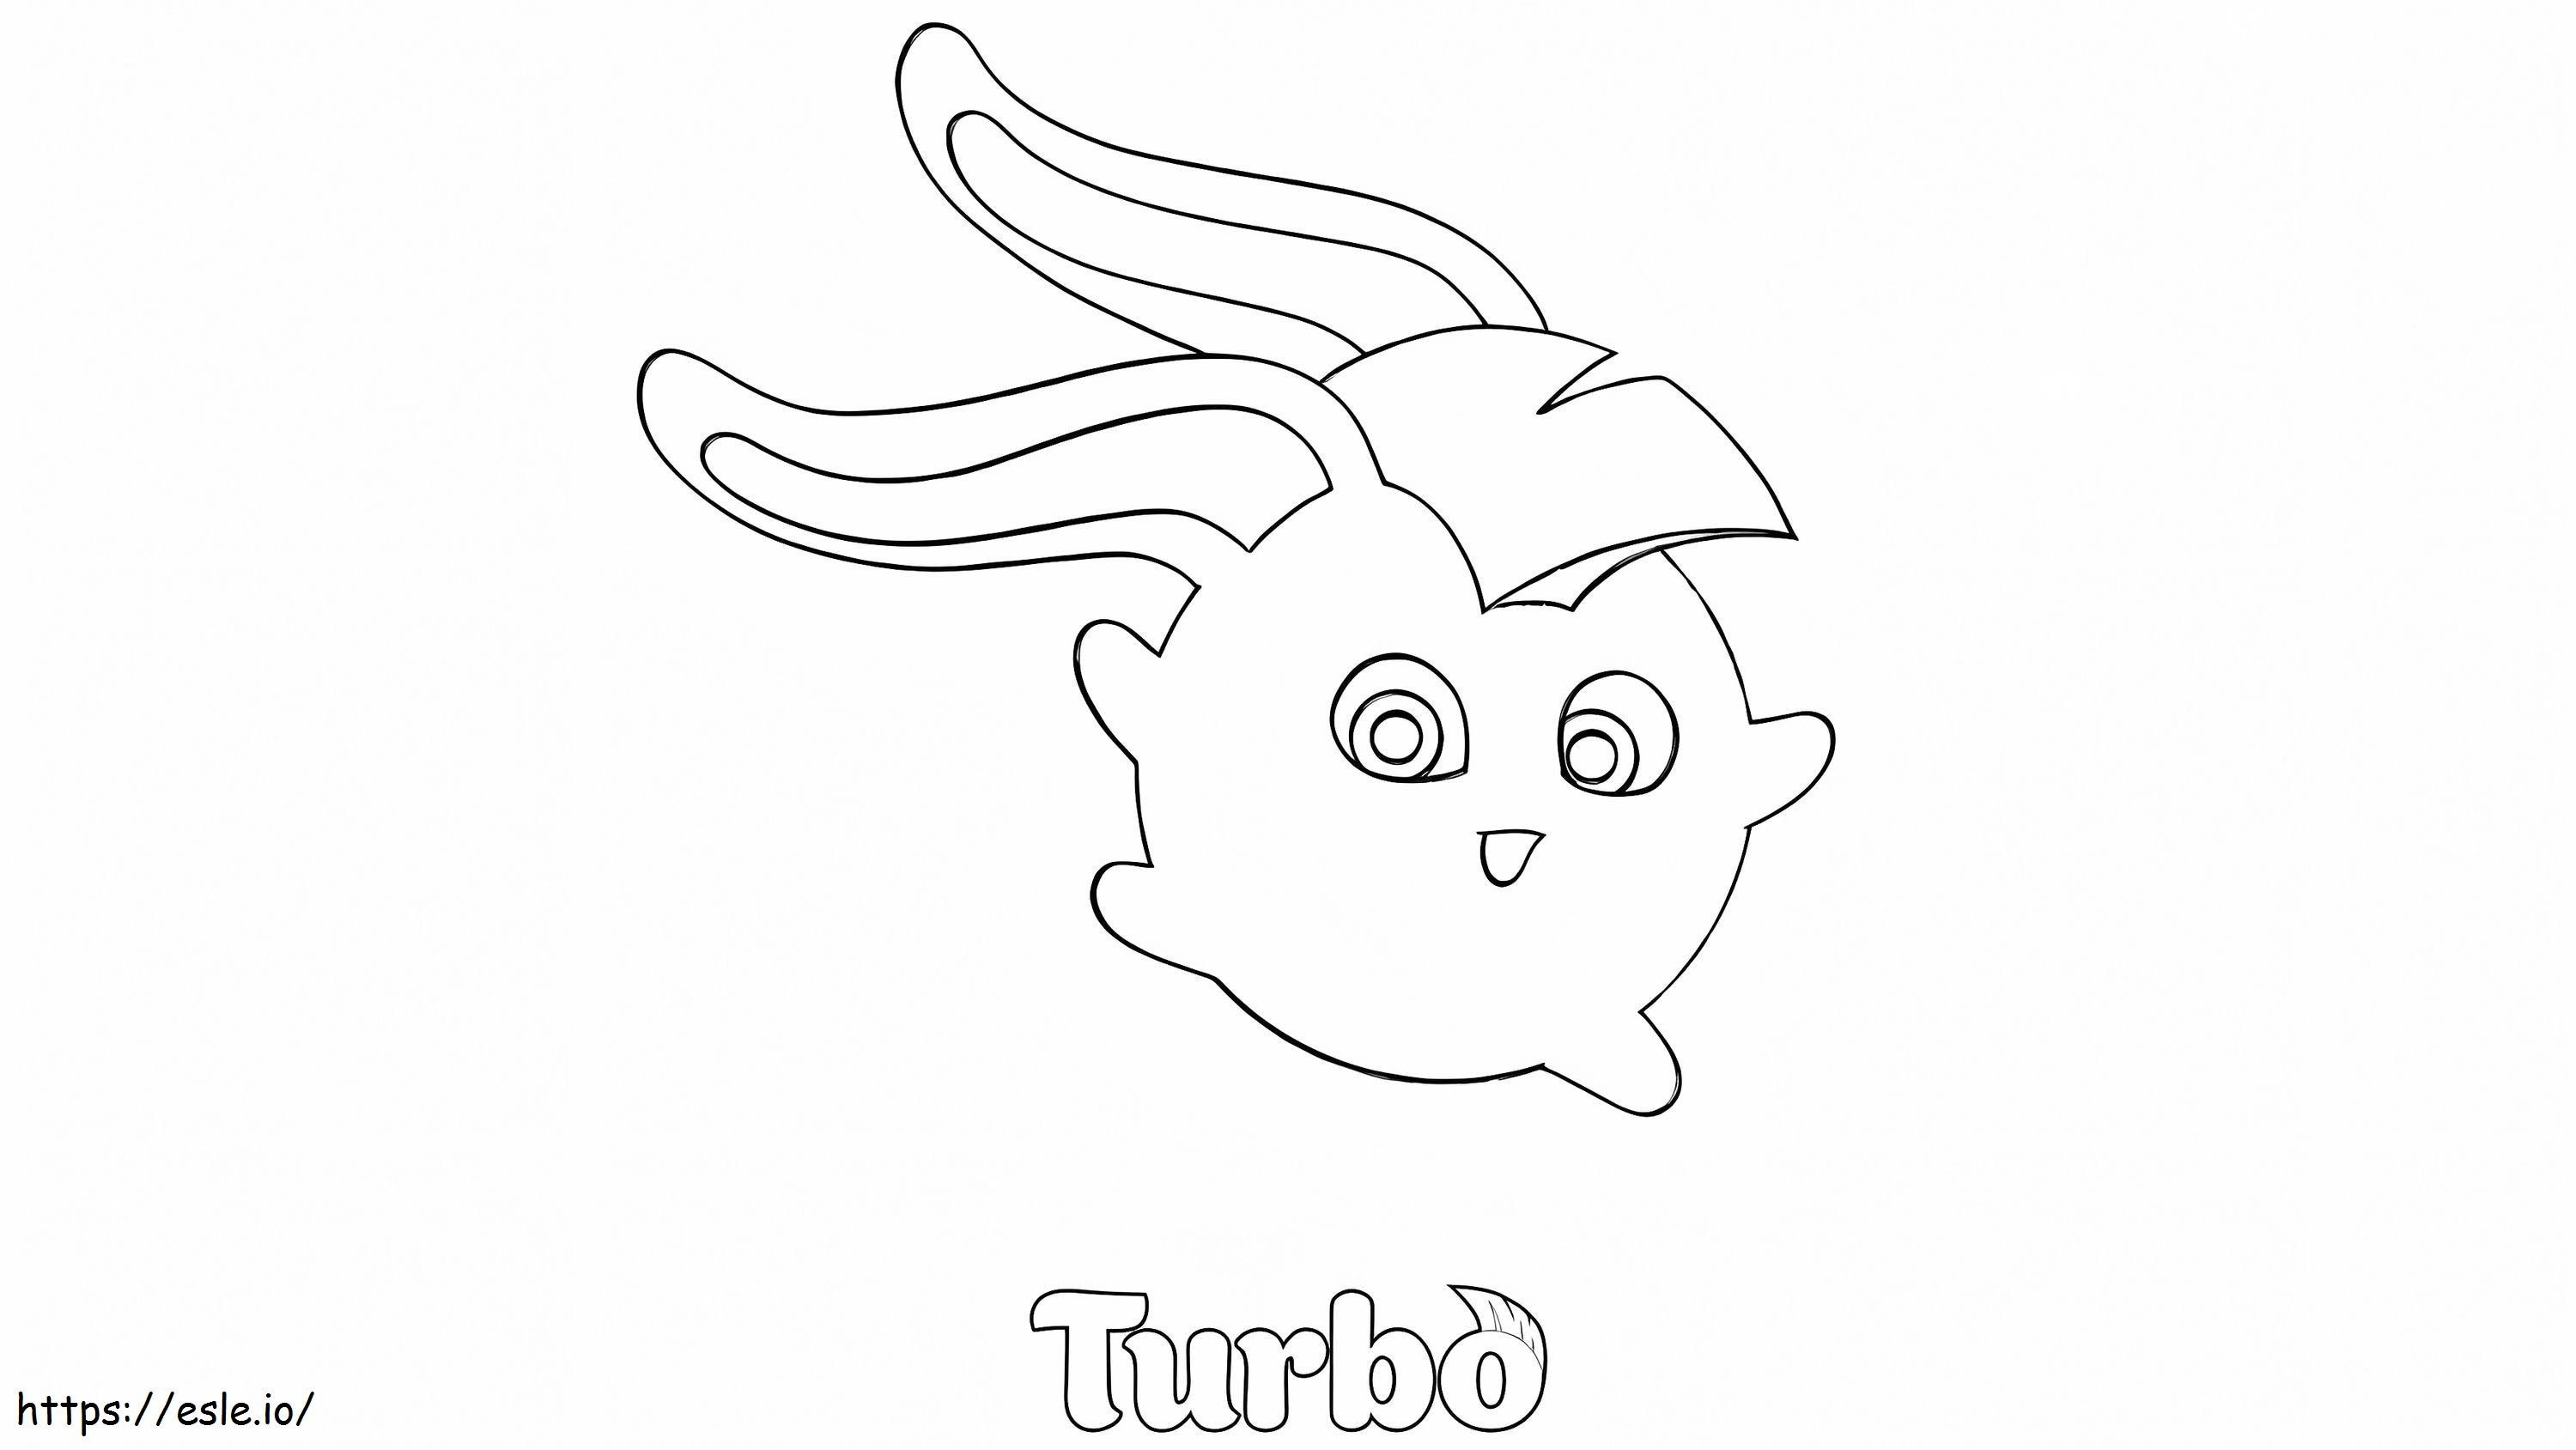 Turbo In Zonnige Konijntjes kleurplaat kleurplaat